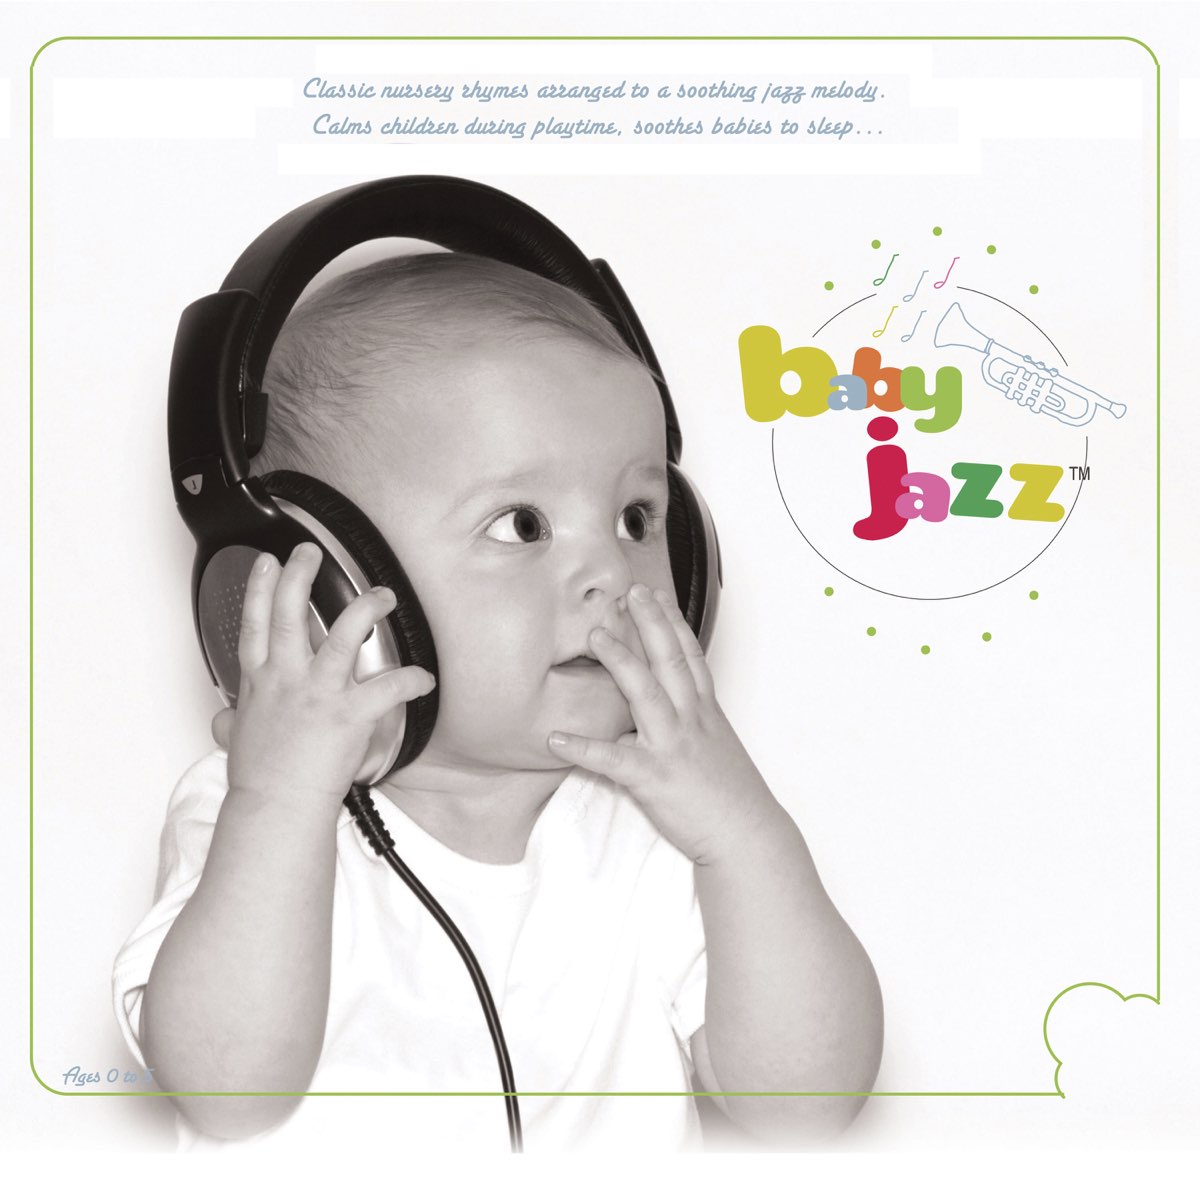 Аудио слушать телефон. Ребенок слушает. Дети СЛУШАЮТ музыку. Слушать музыку картинка для детей. Ребенок слушает музыку на белом фоне.